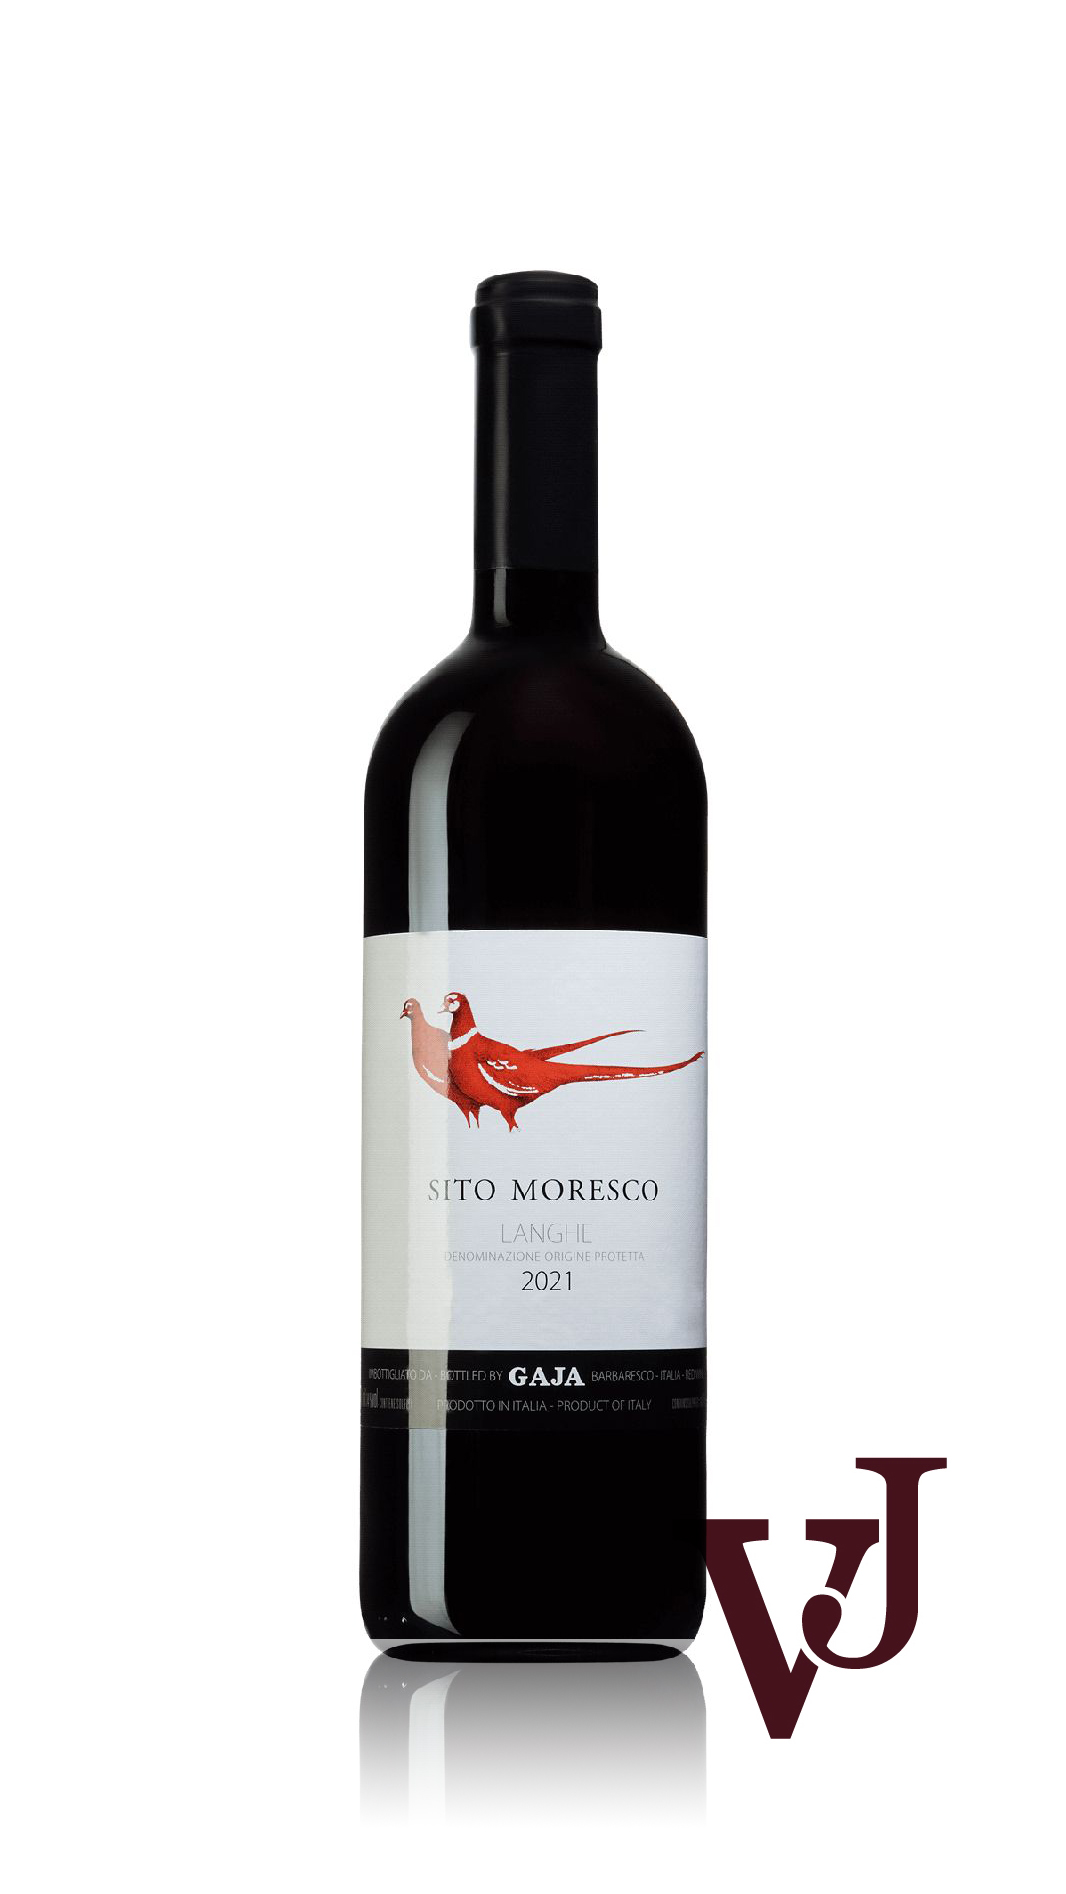 Rött Vin - Gaja Sito Moresco artikel nummer 9264501 från producenten Gaja från området Italien